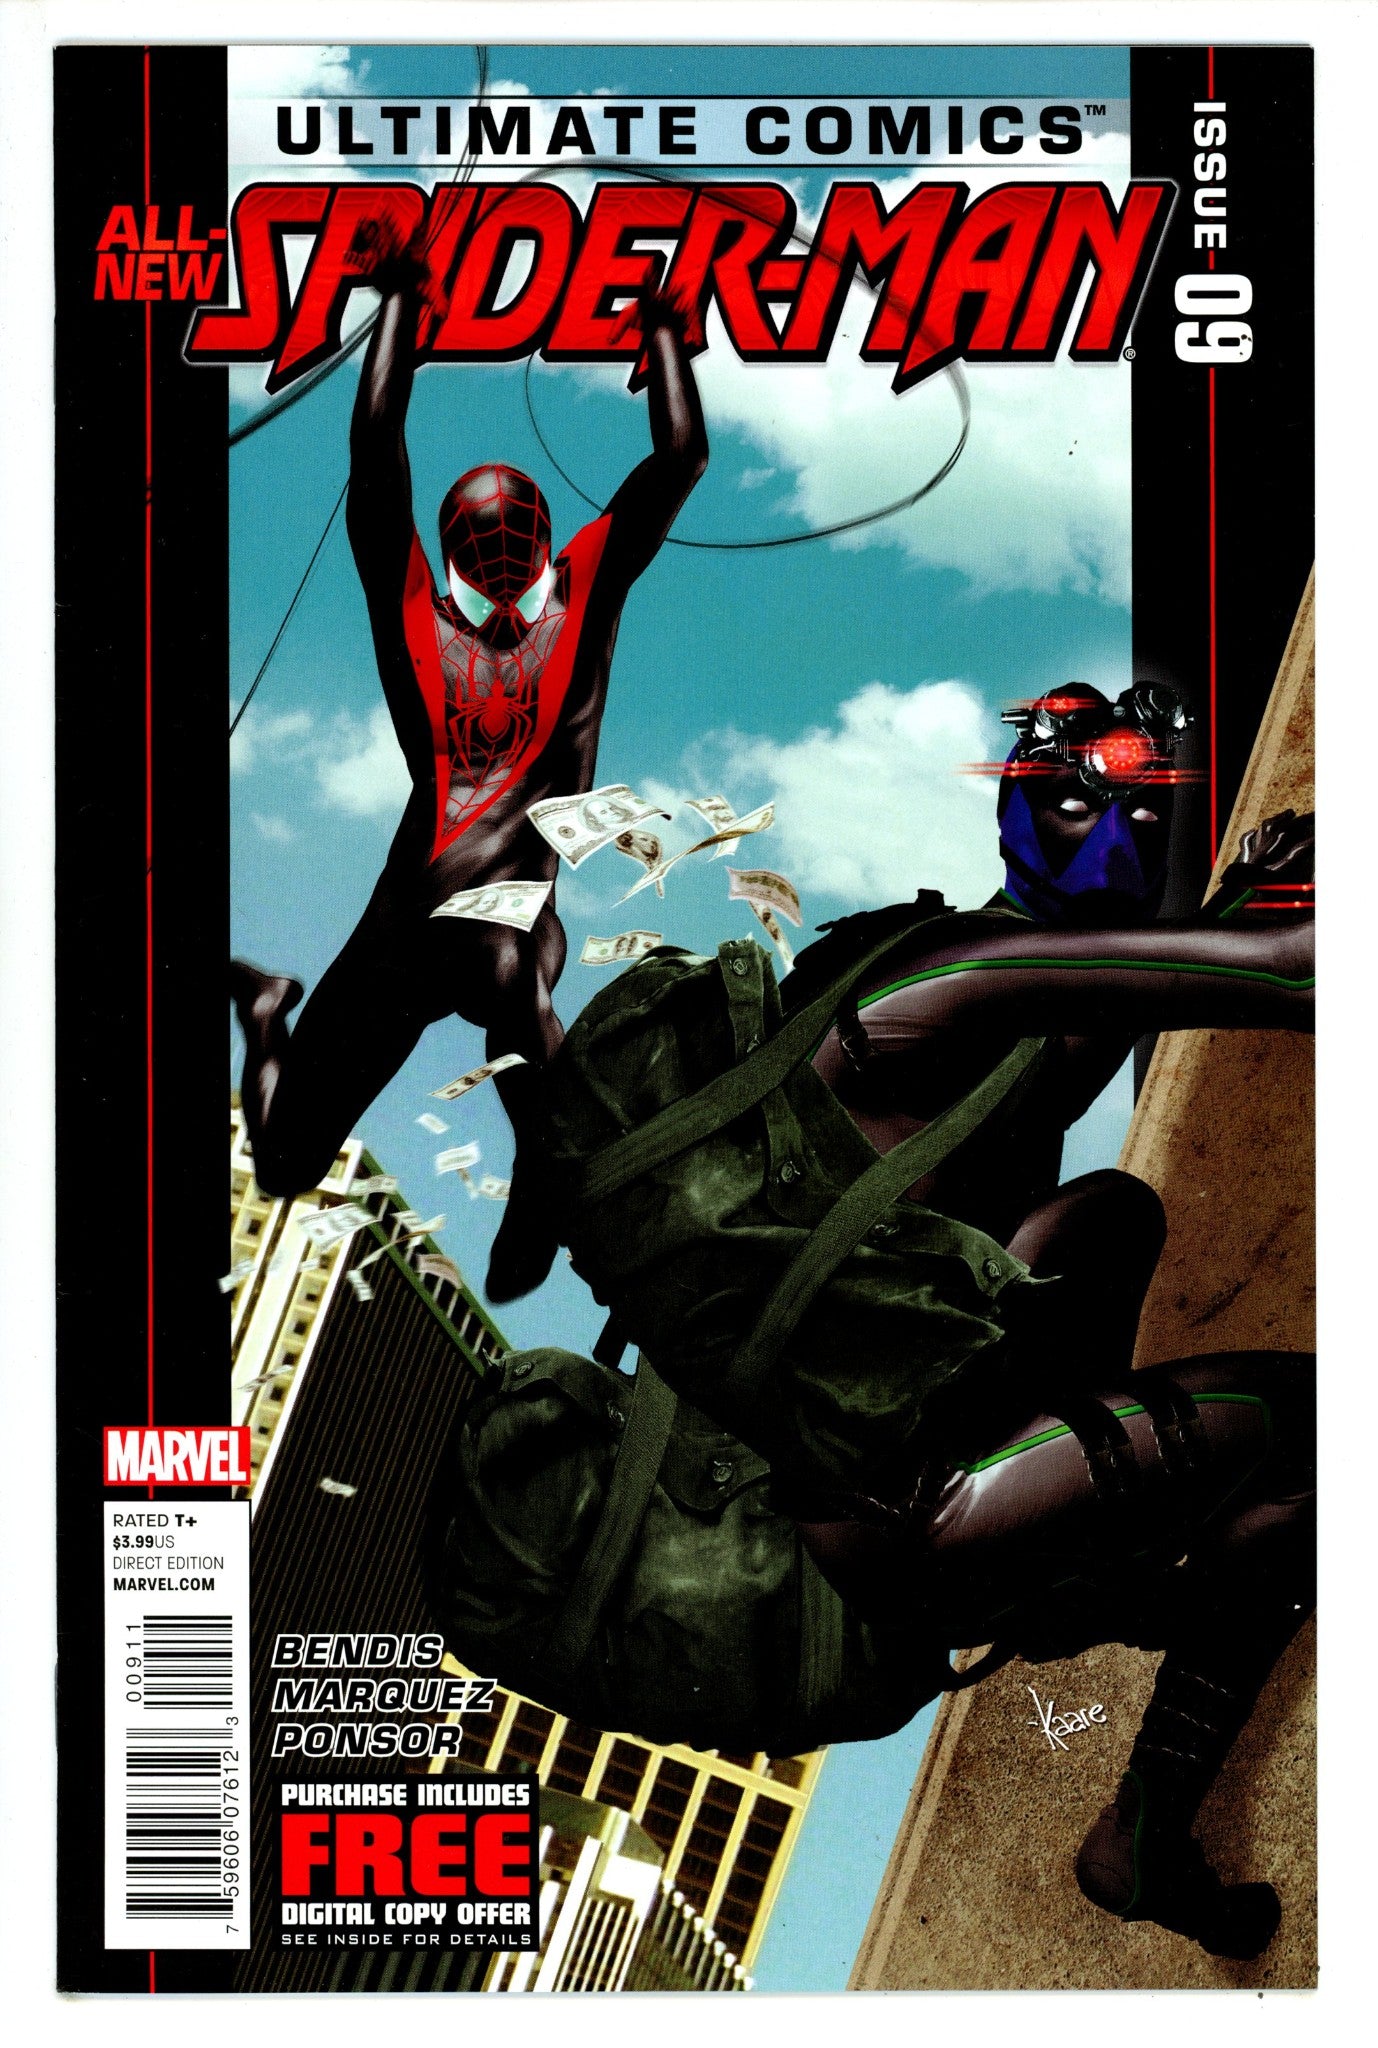 Ultimate Comics Spider-Man Vol 2 9 NM- (9.2) (2012) 